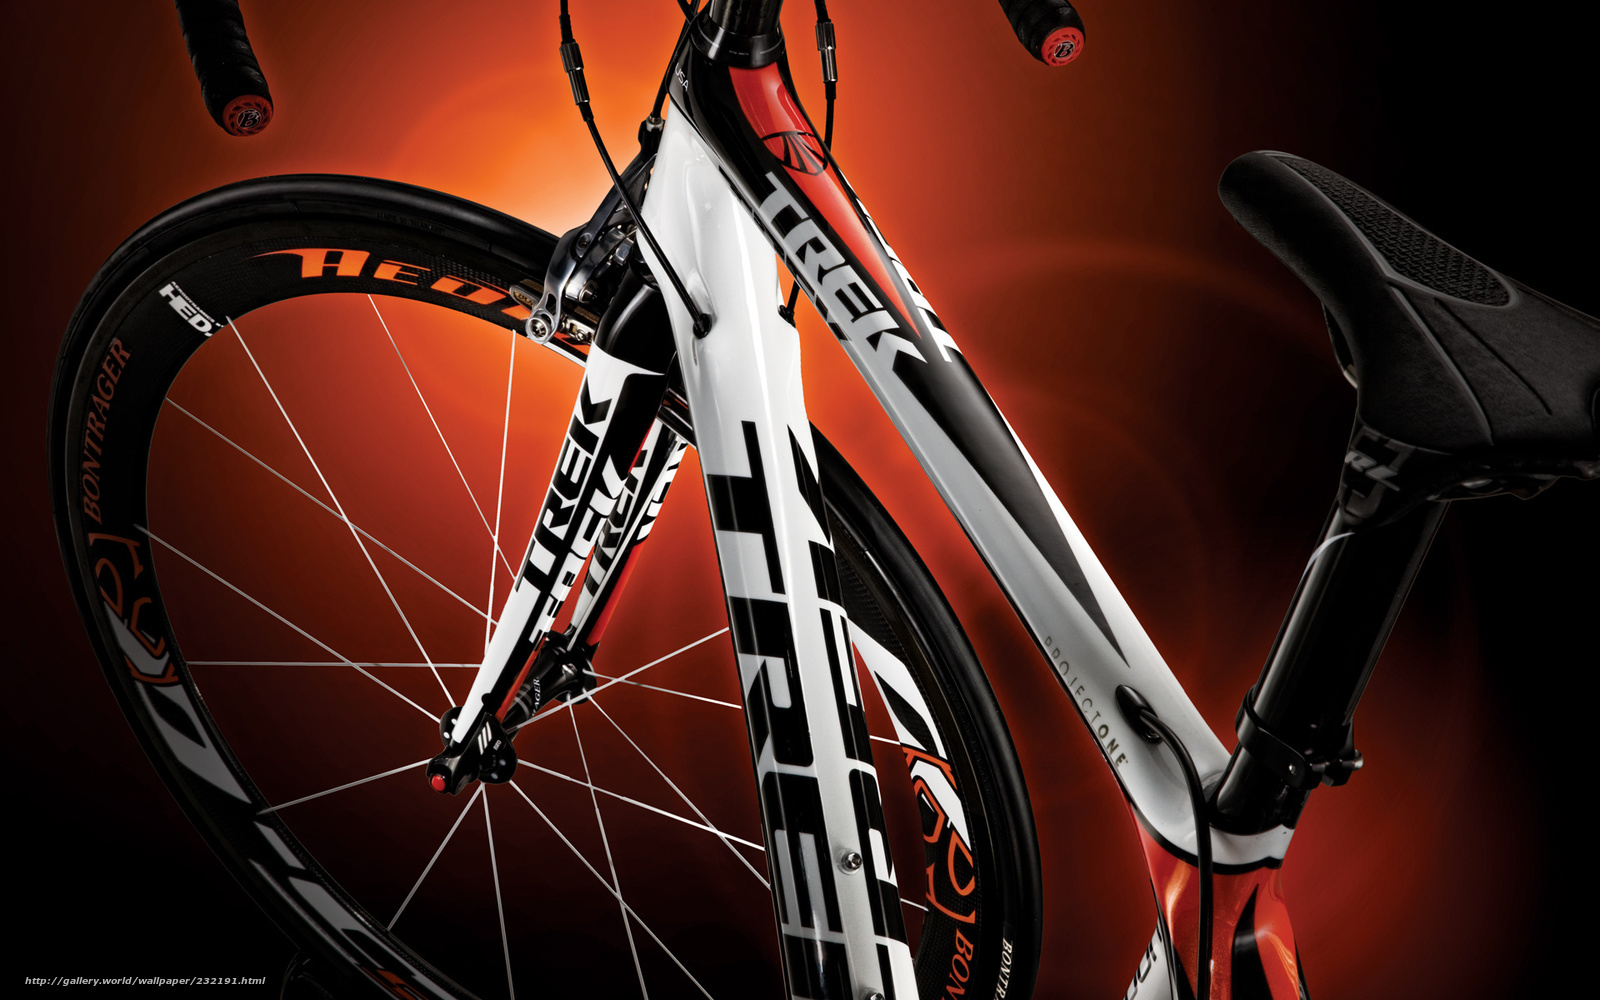 trek wallpaper,bicycle wheel,bicycle part,bicycle,bicycle frame,bicycle tire